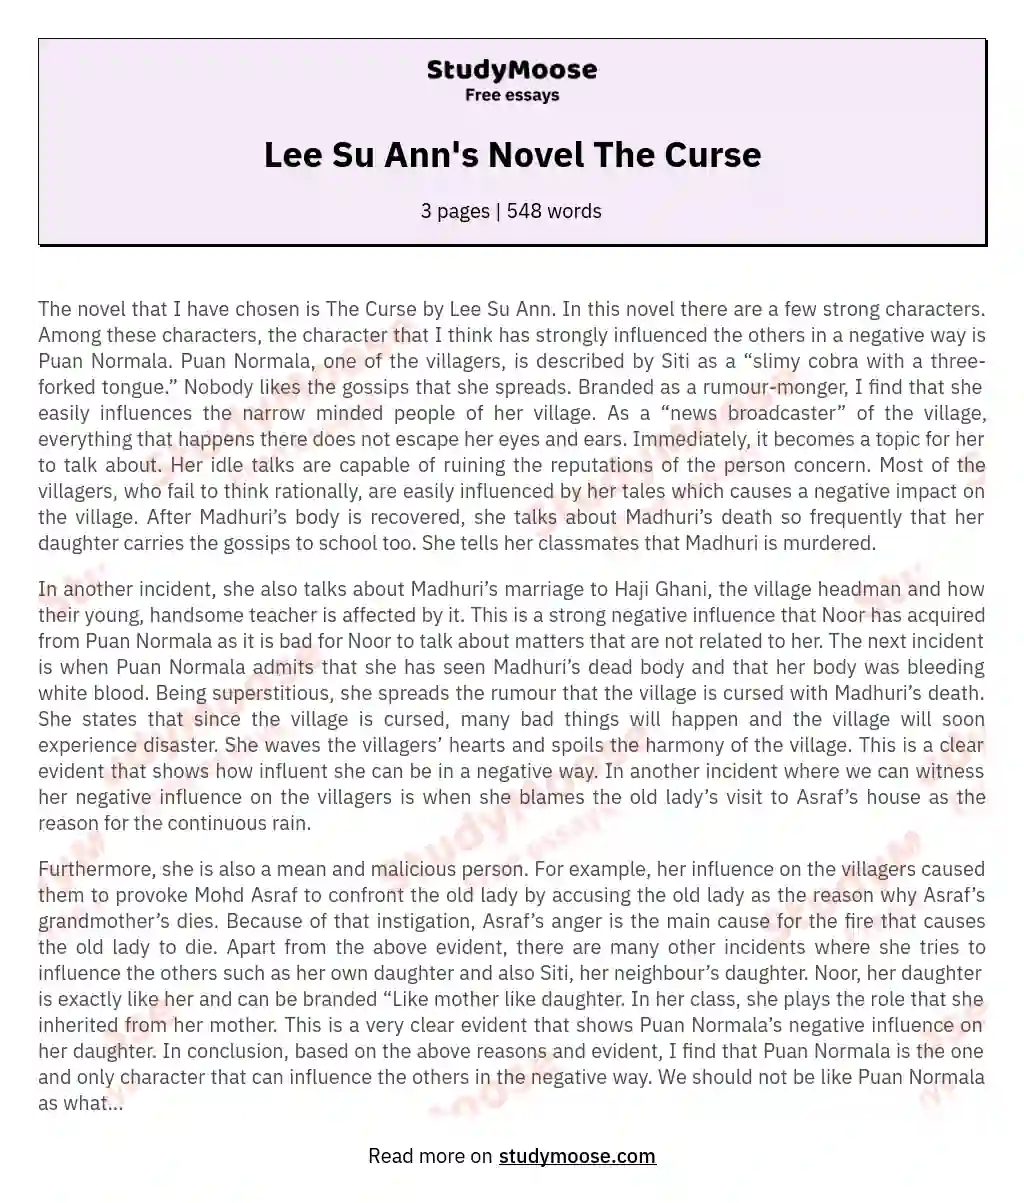 Lee Su Ann's Novel The Curse essay